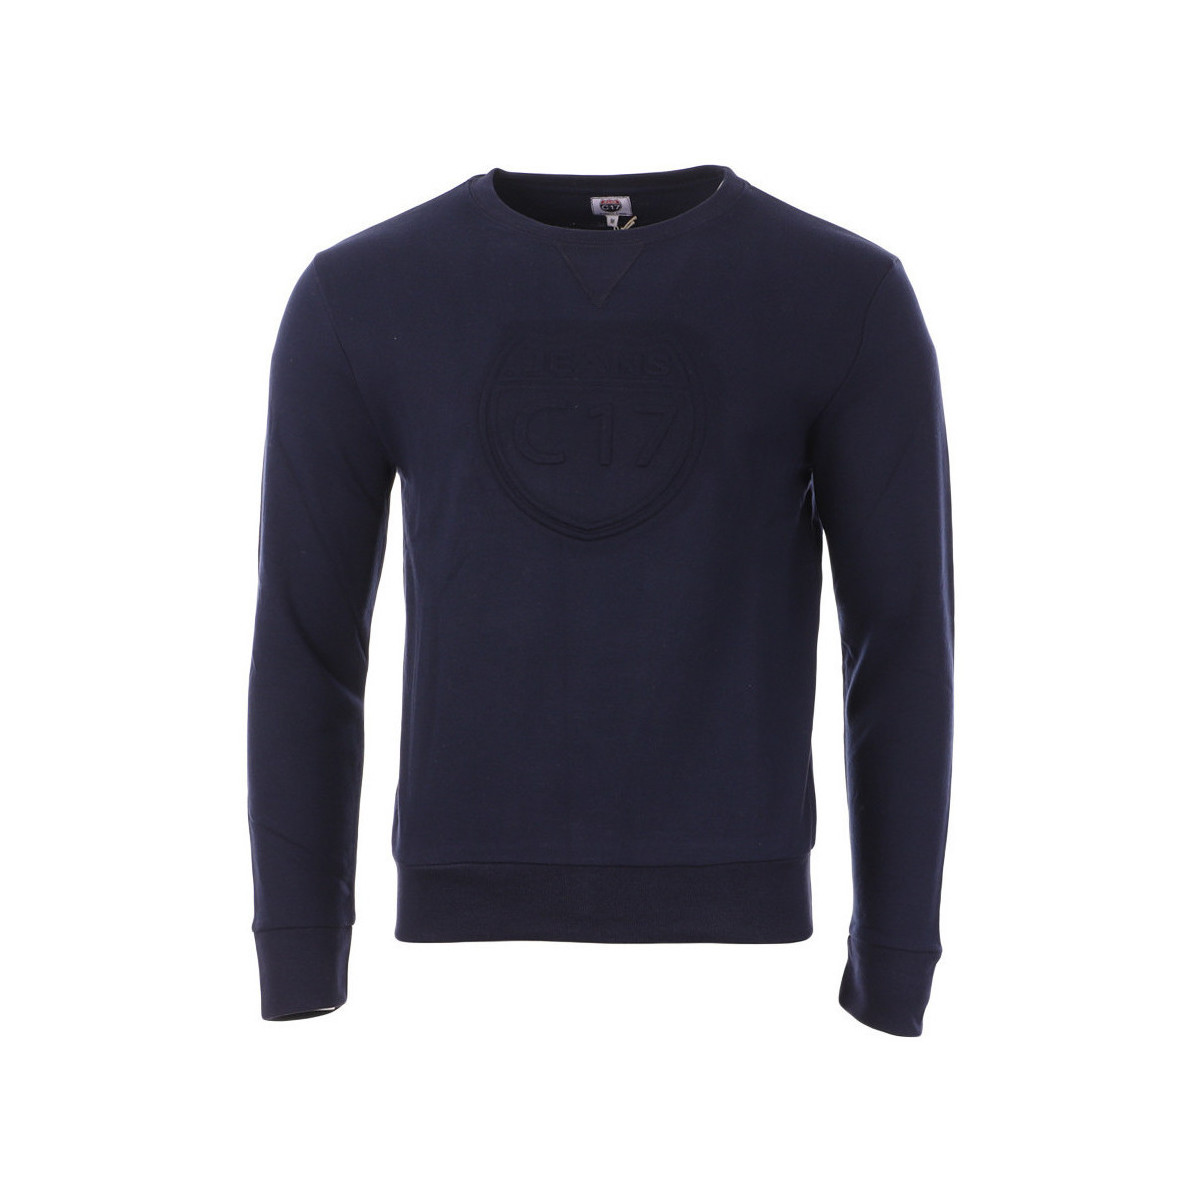 Textiel Heren Sweaters / Sweatshirts C17  Blauw